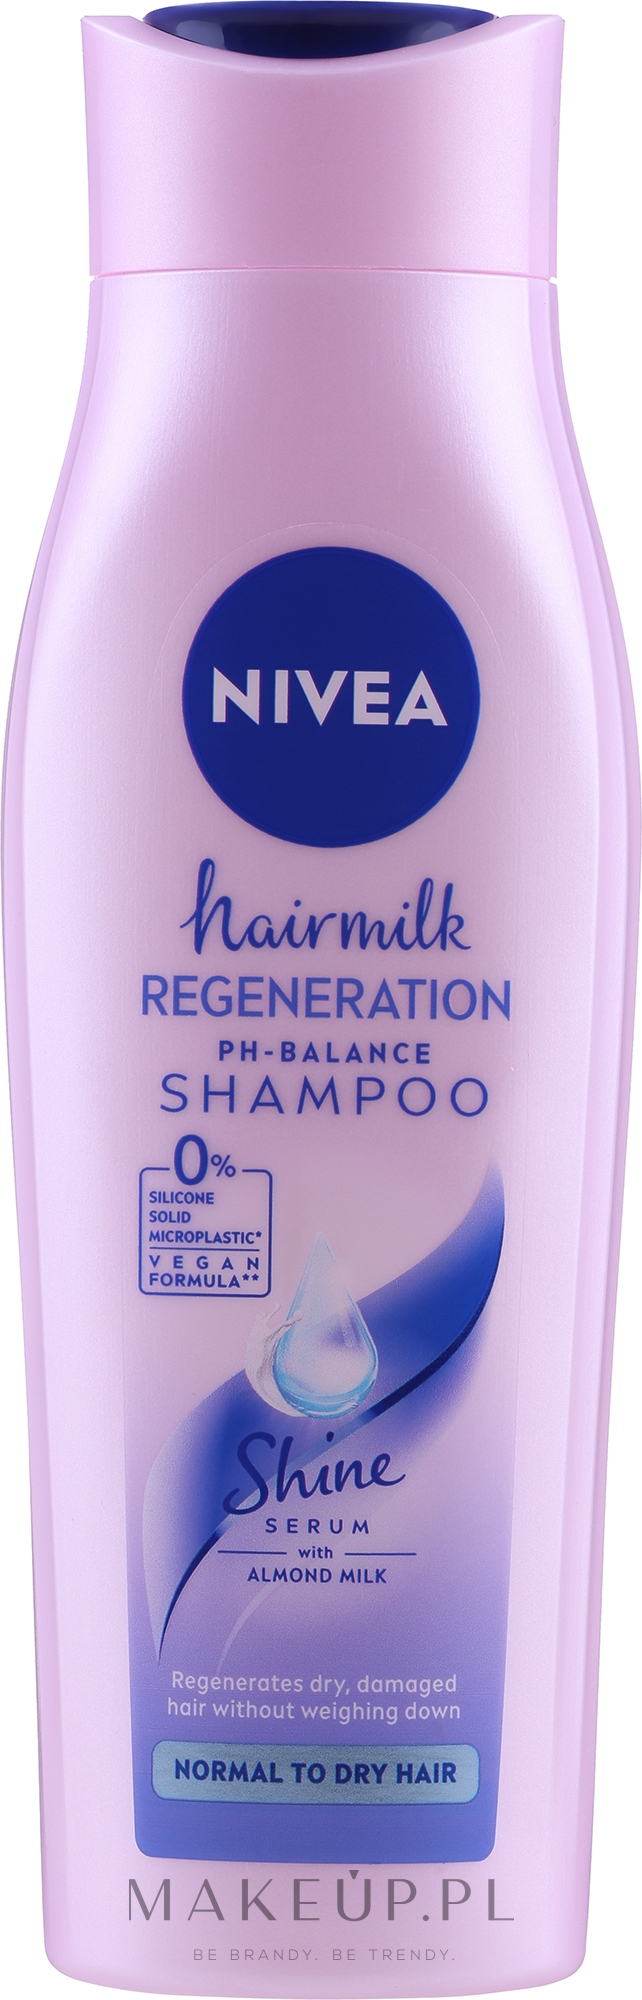 szampon nivea hair milk wizaz